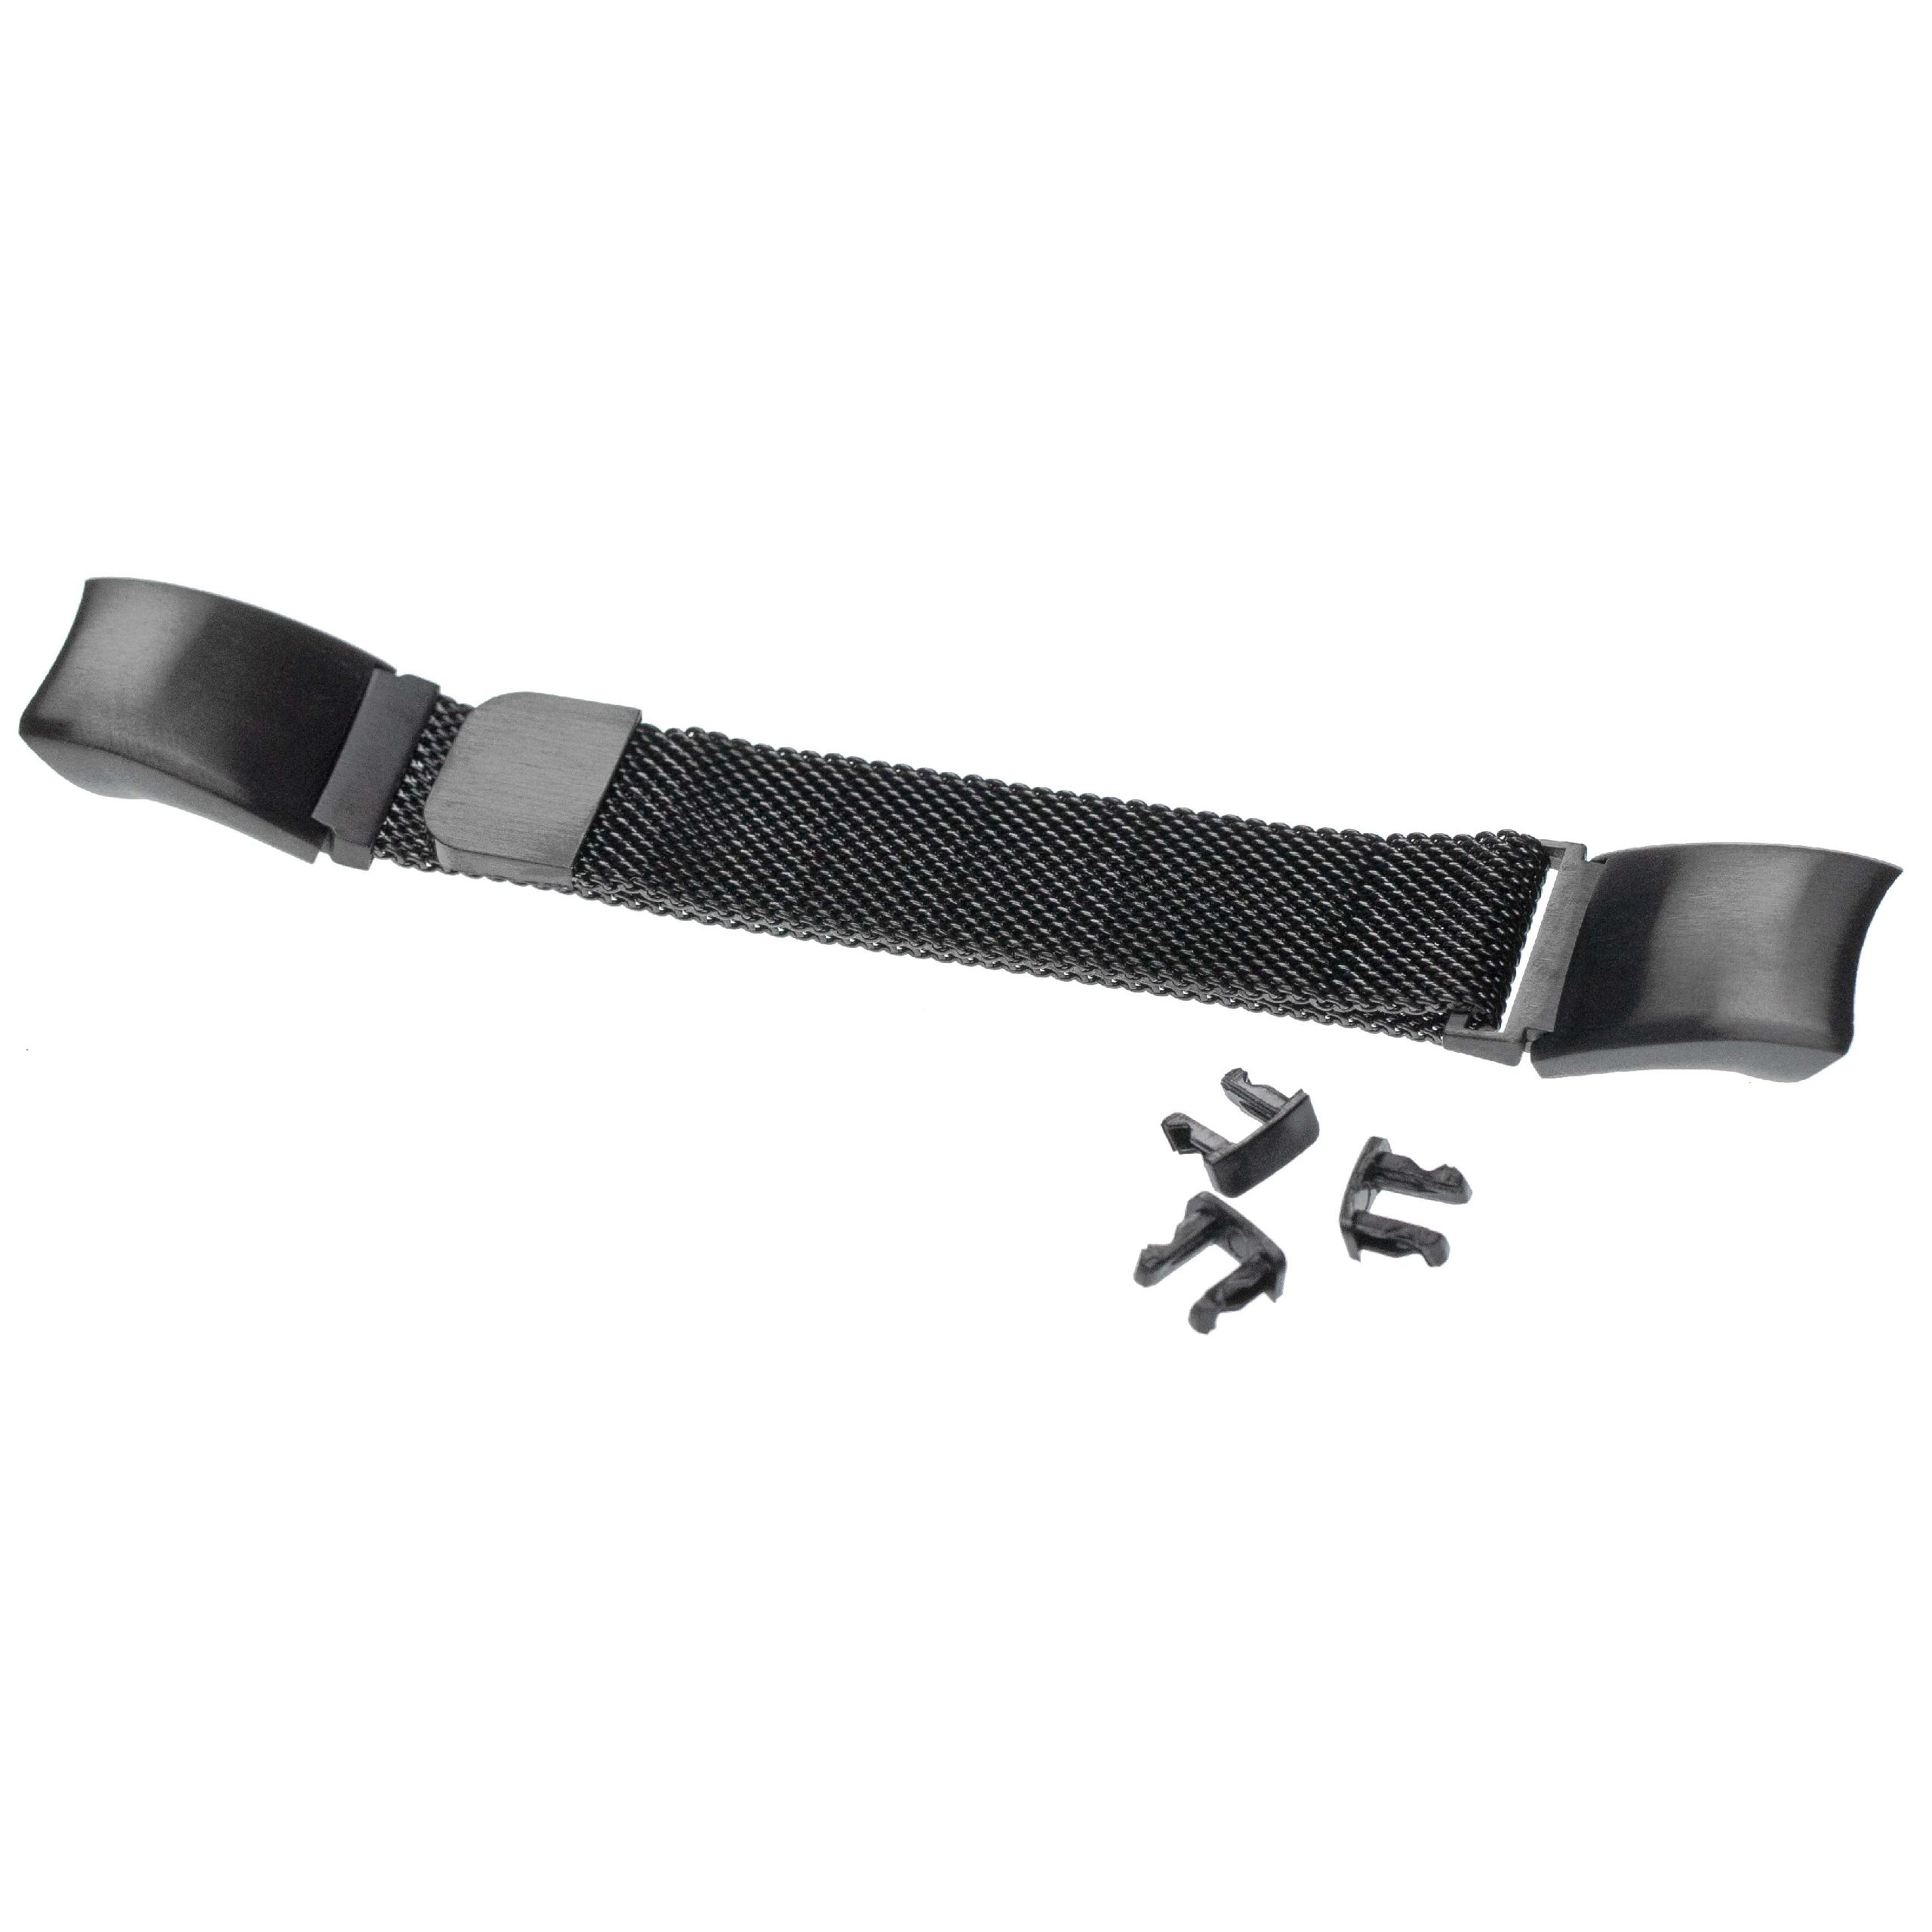 Bracelet pour montre intelligente Huawei Honor Band 4 / Honor Band 5 - 23 cm de long, 16mm de large, acier ino